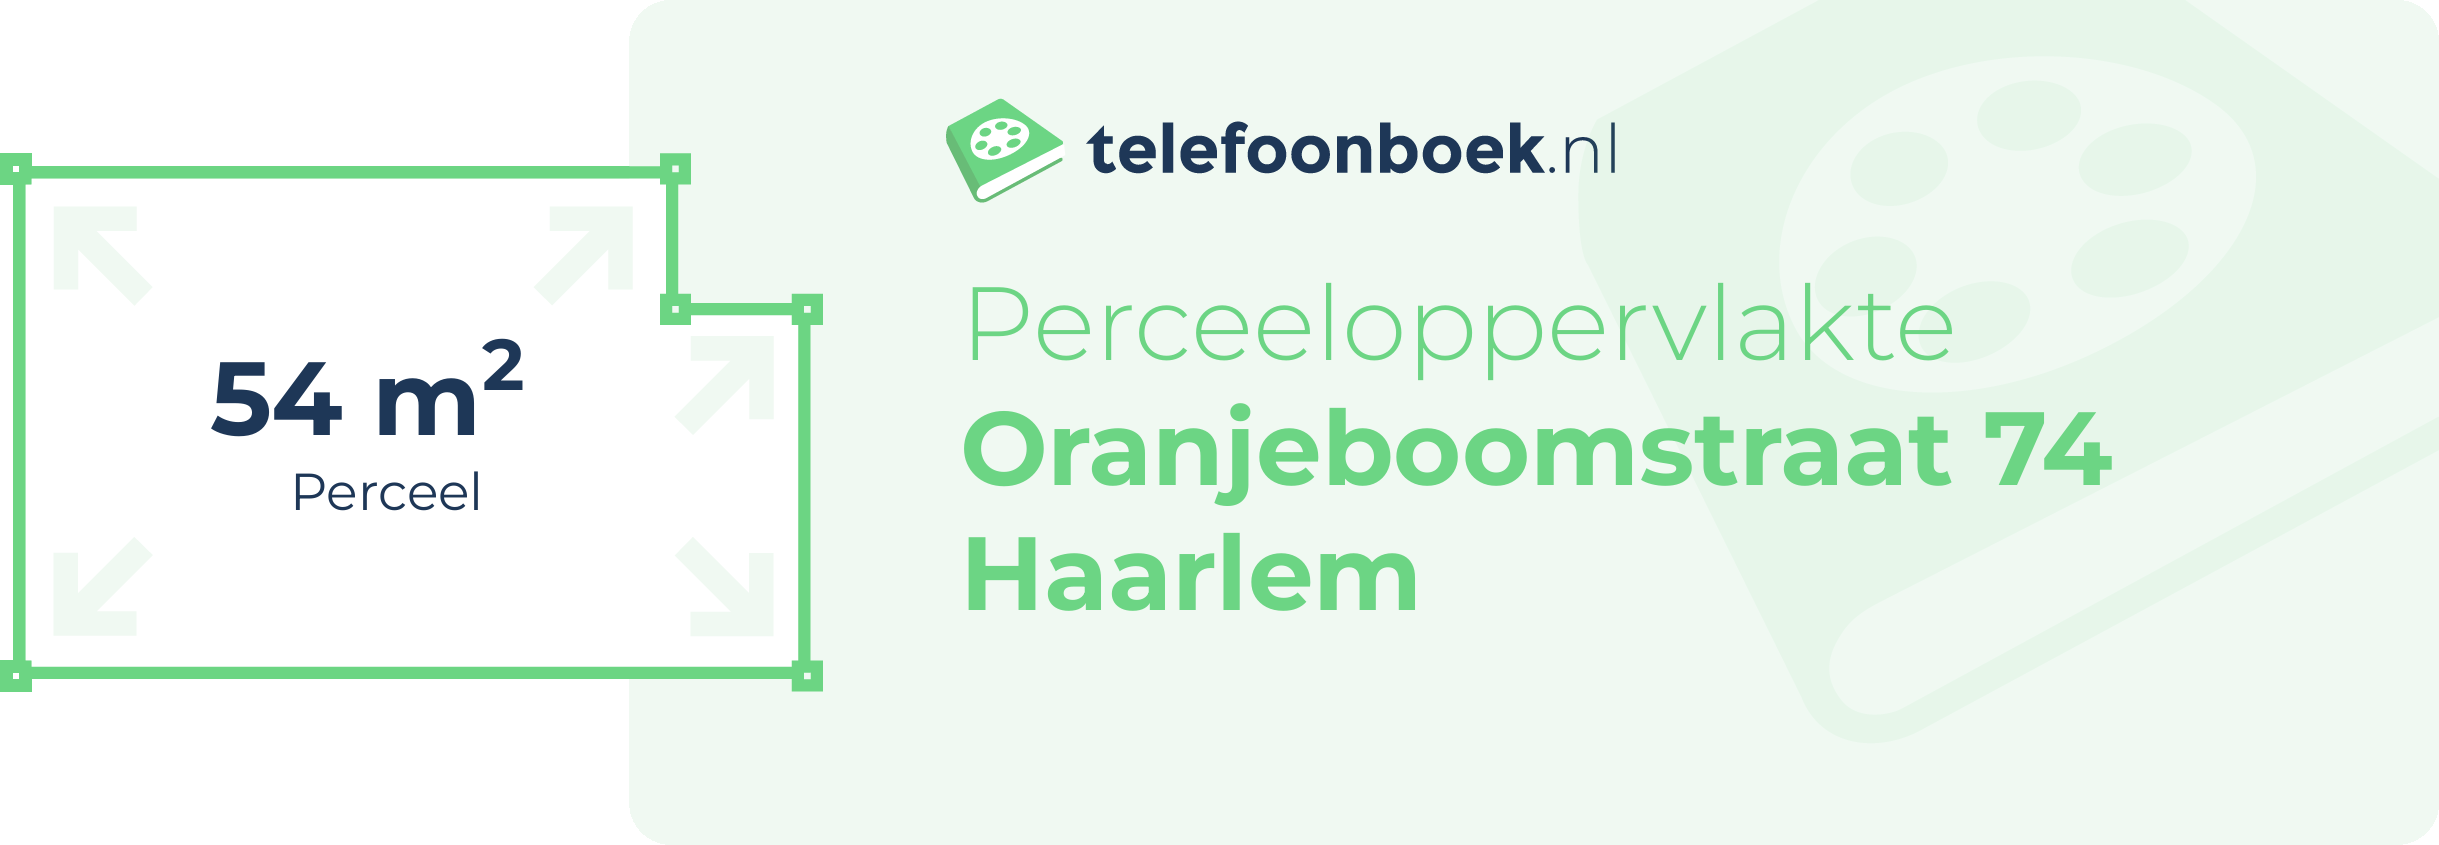 Perceeloppervlakte Oranjeboomstraat 74 Haarlem